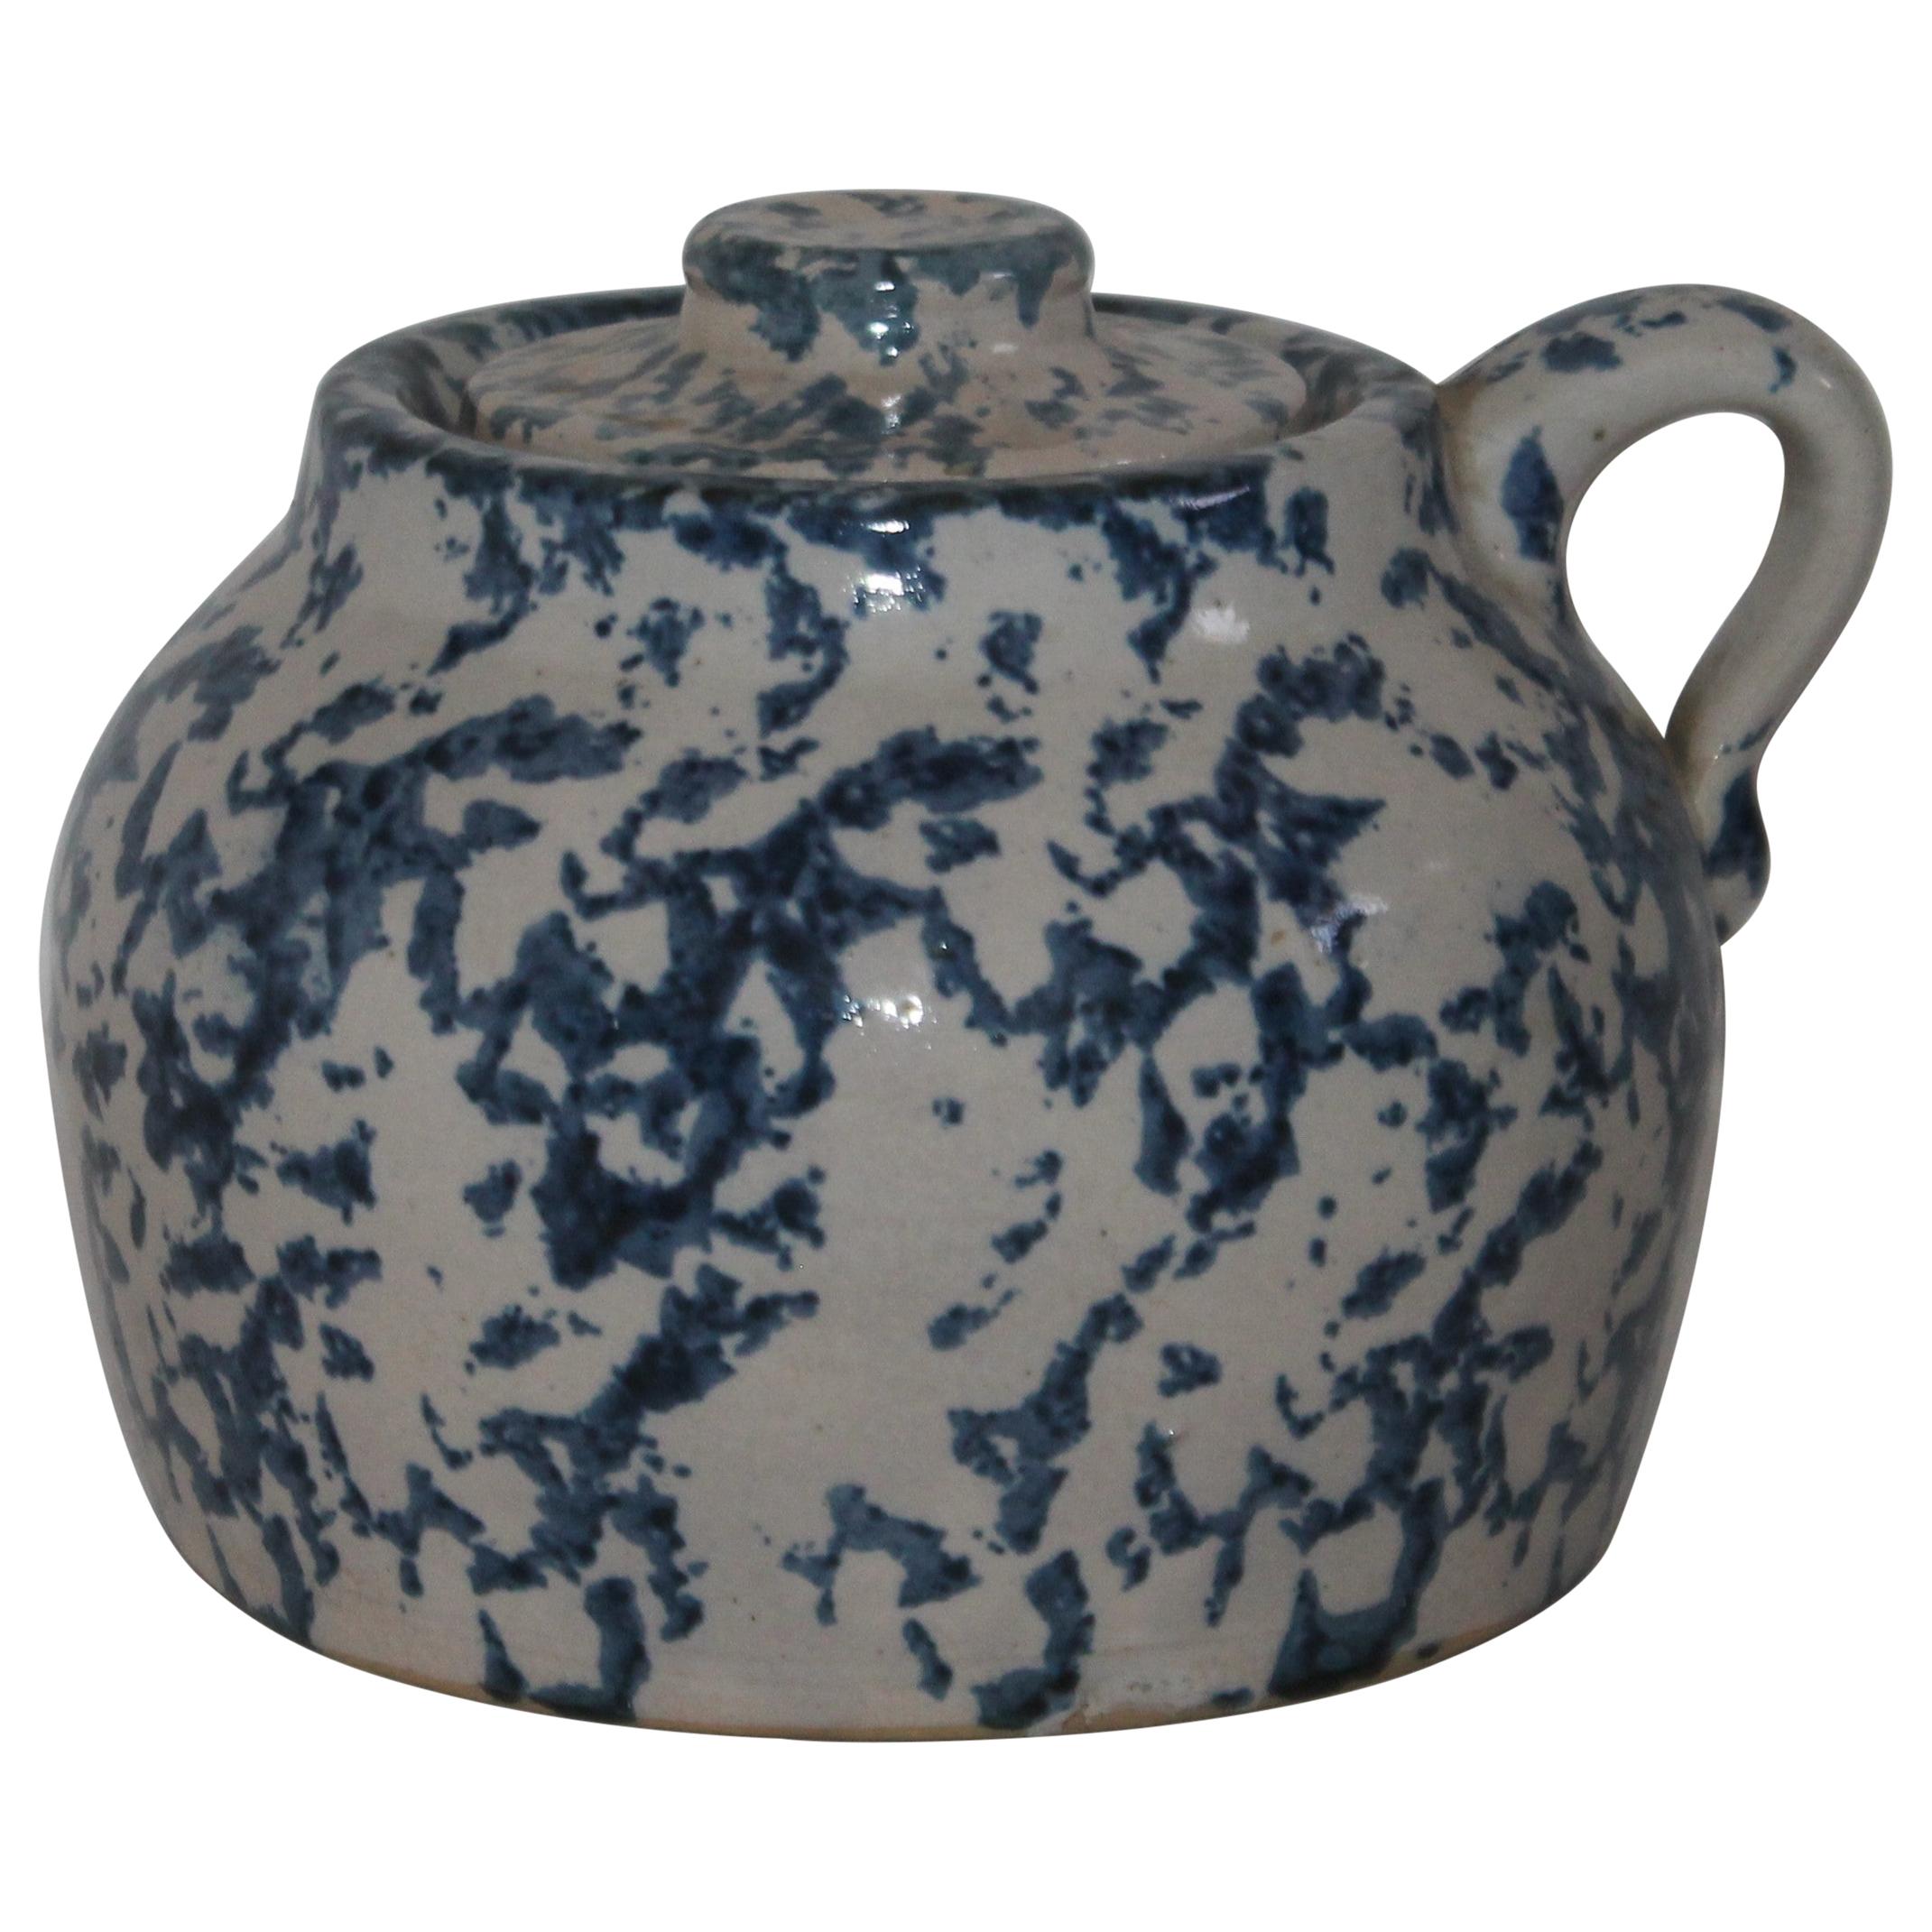 Seltener Bohnentopf aus Spongeware-Keramik des 19. Jahrhunderts